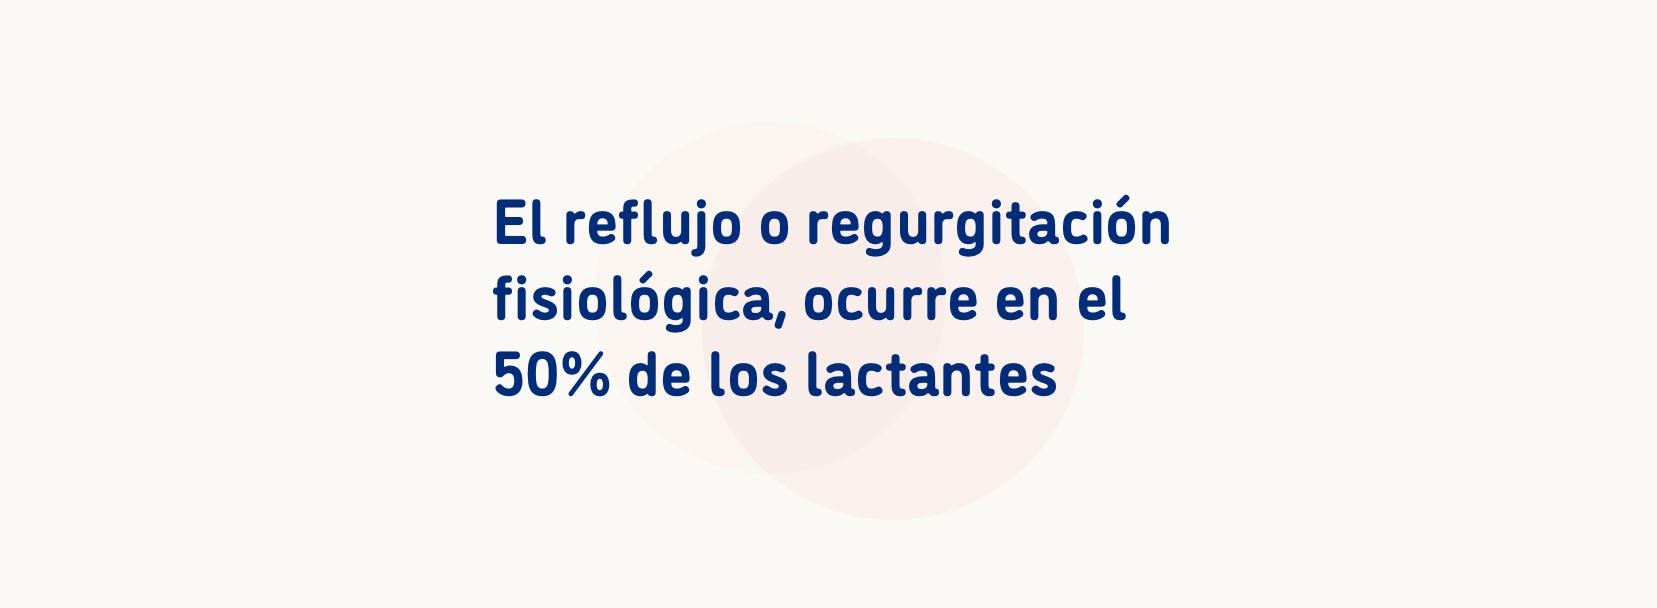 El reflujo o regurgitación fisiológica, ocurre en el 50% de los lactantes